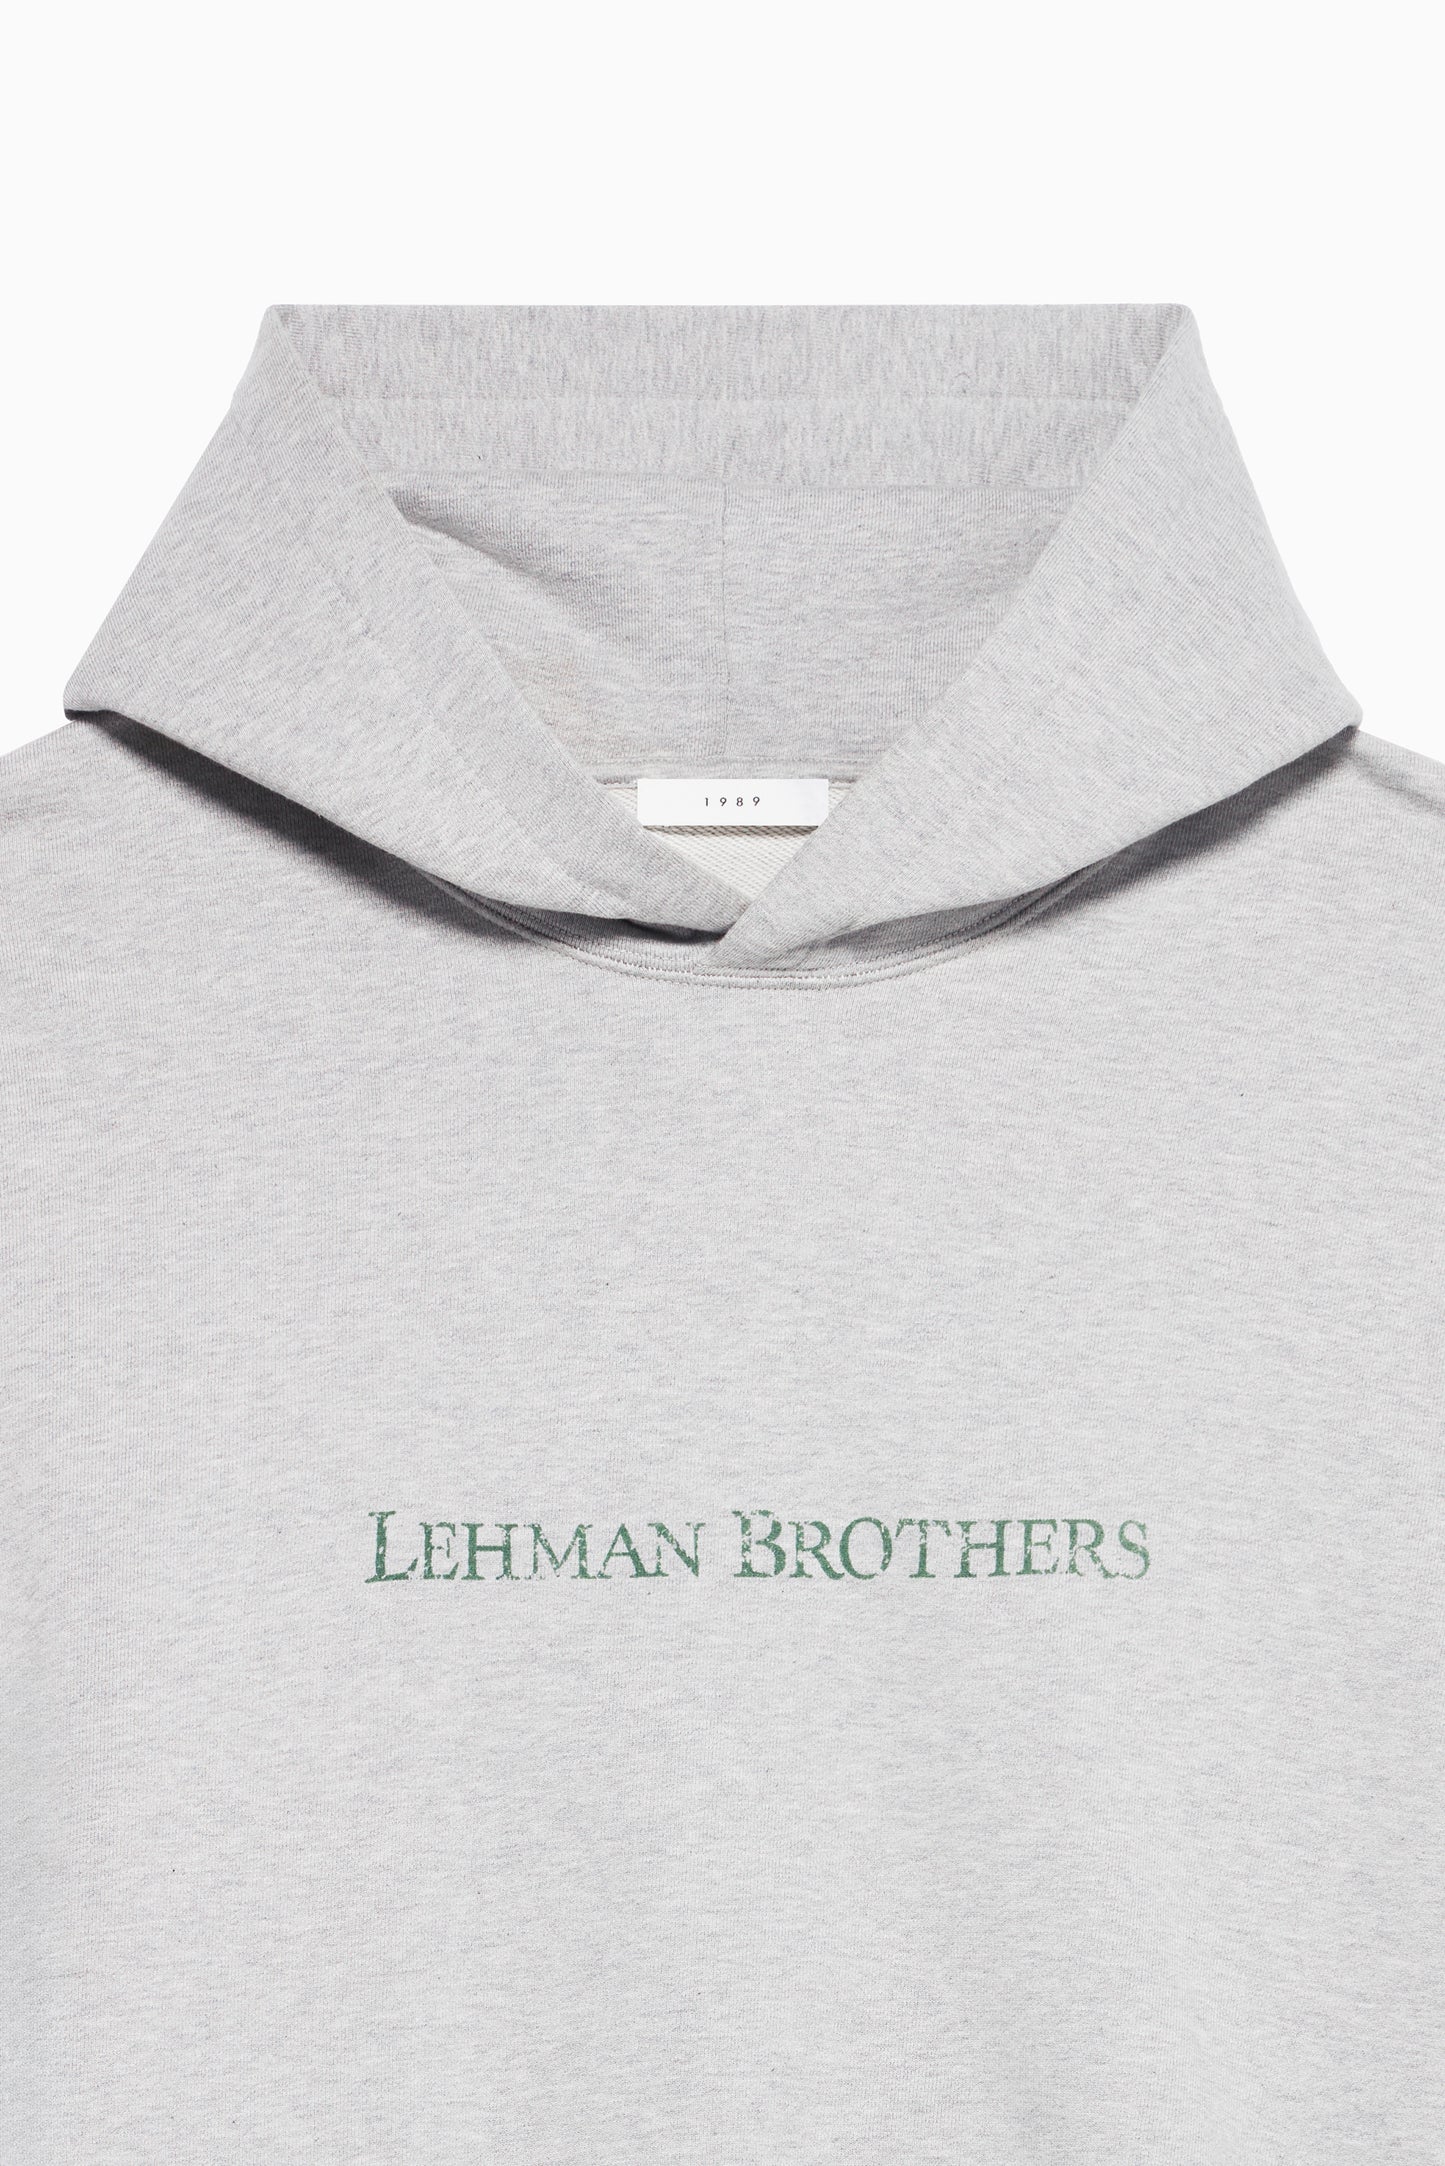 Man's Lehman Brothers Hoodie